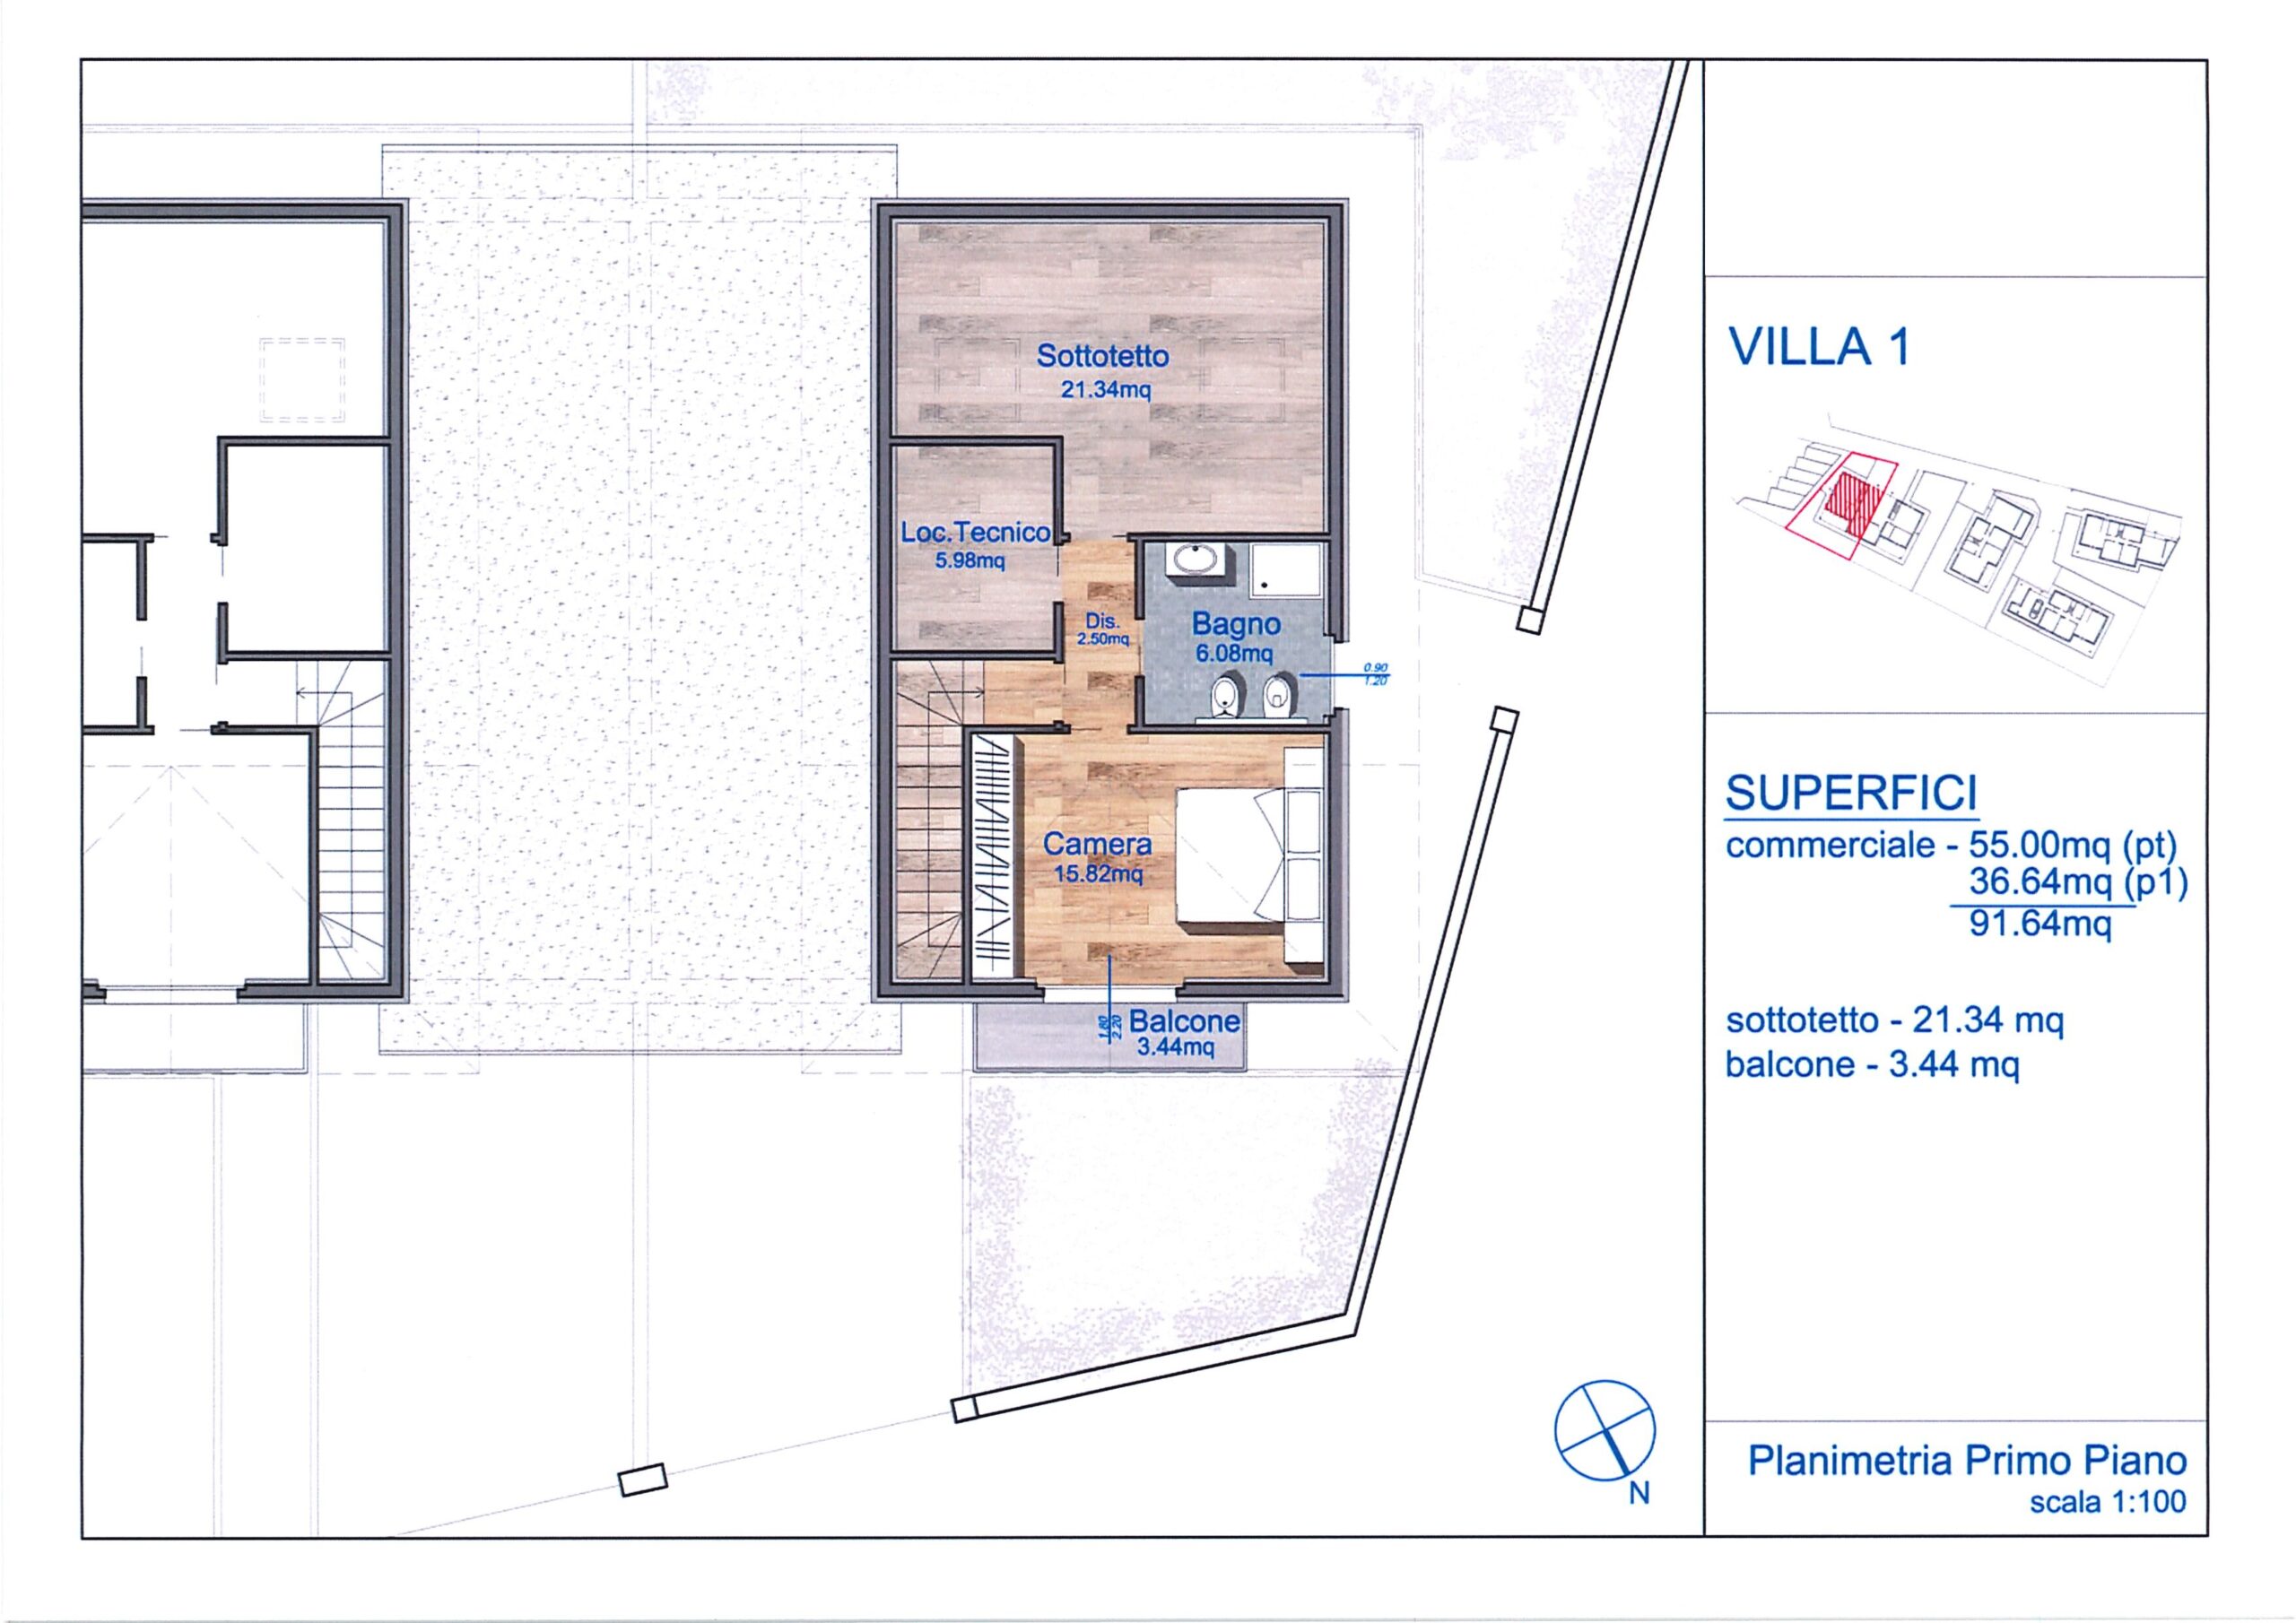 Nuove costruzioni, classe A4, Gravellona Toce – Porzione villa 1-2